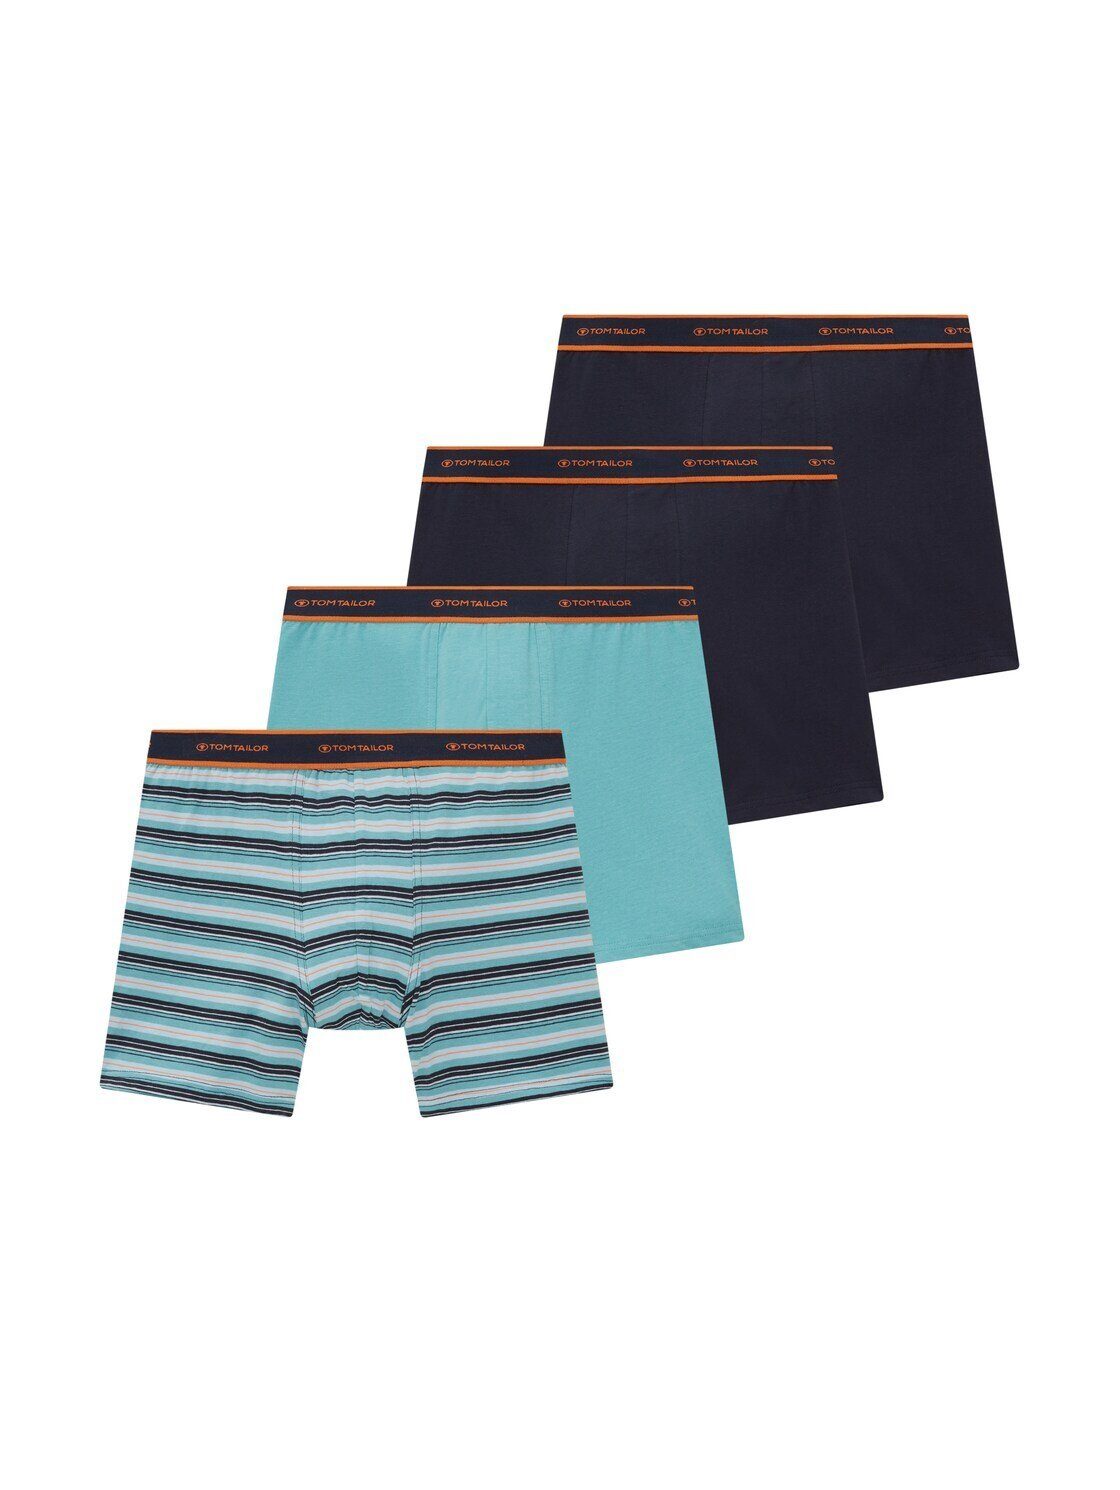 Pants TOM im TAILOR 4er Viererpack) (im green-medium-horizontal stripe Long Boxershorts Pack